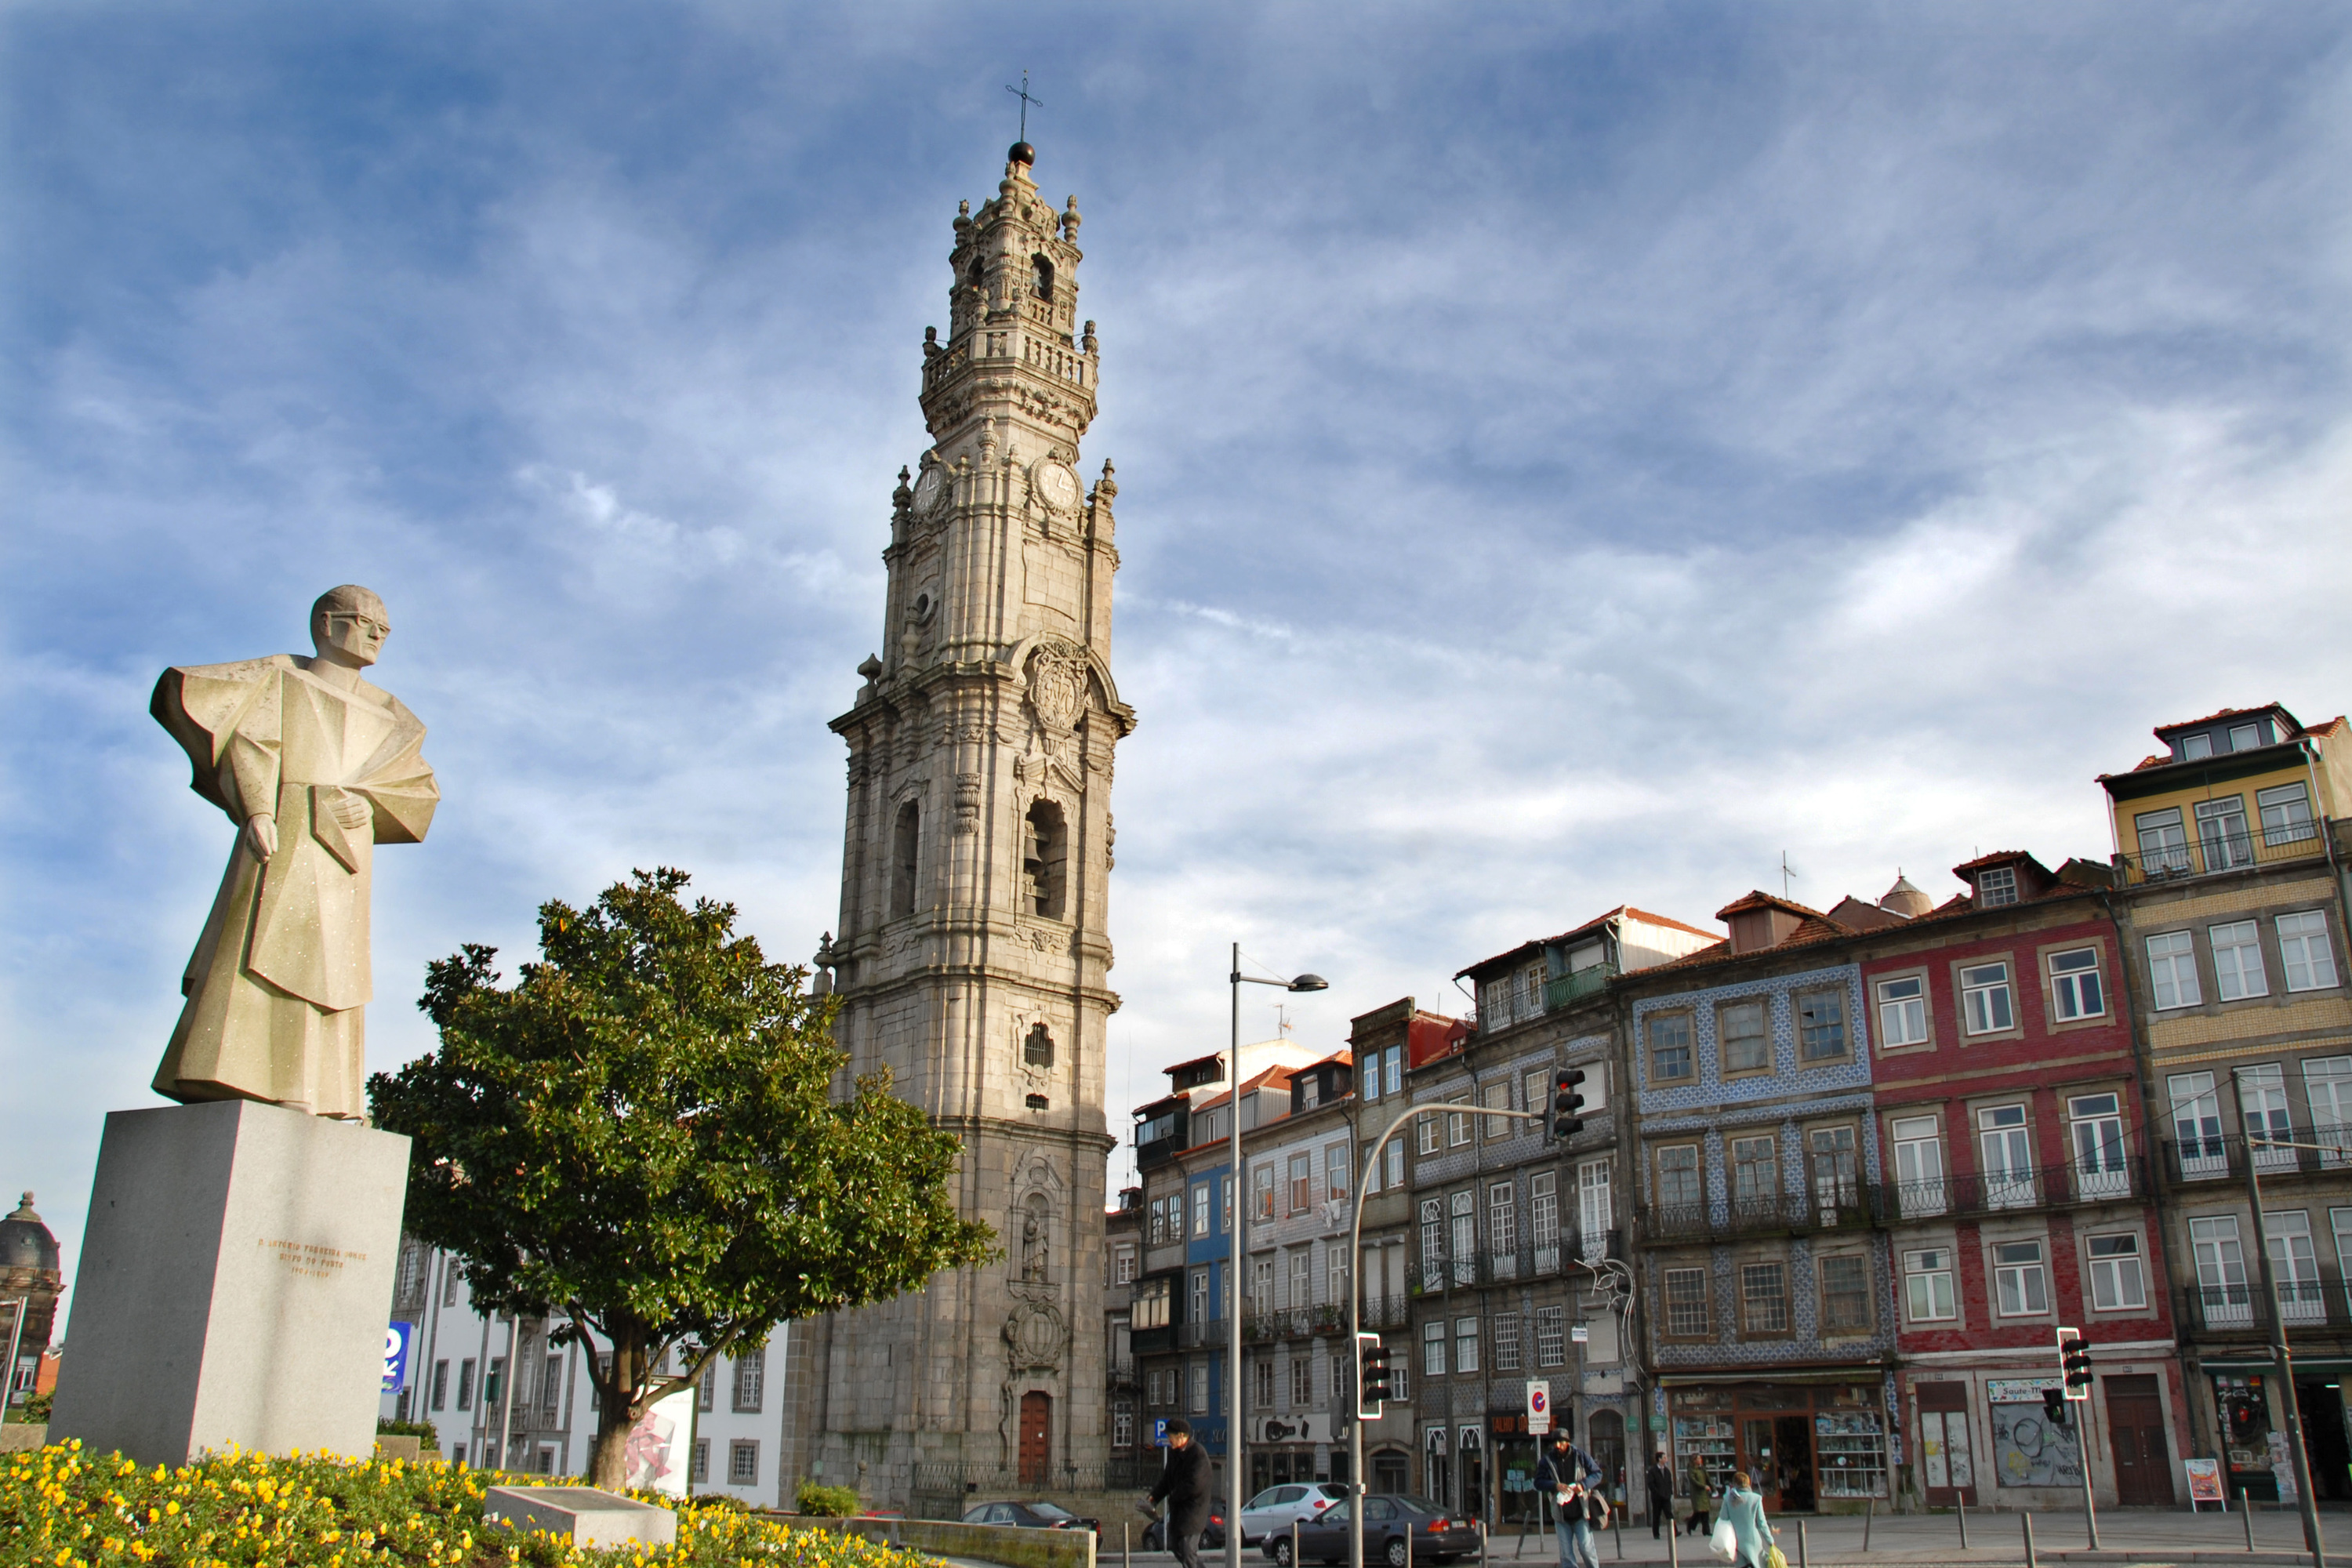 Clérigos Tower | Attractions in Baixa, Porto